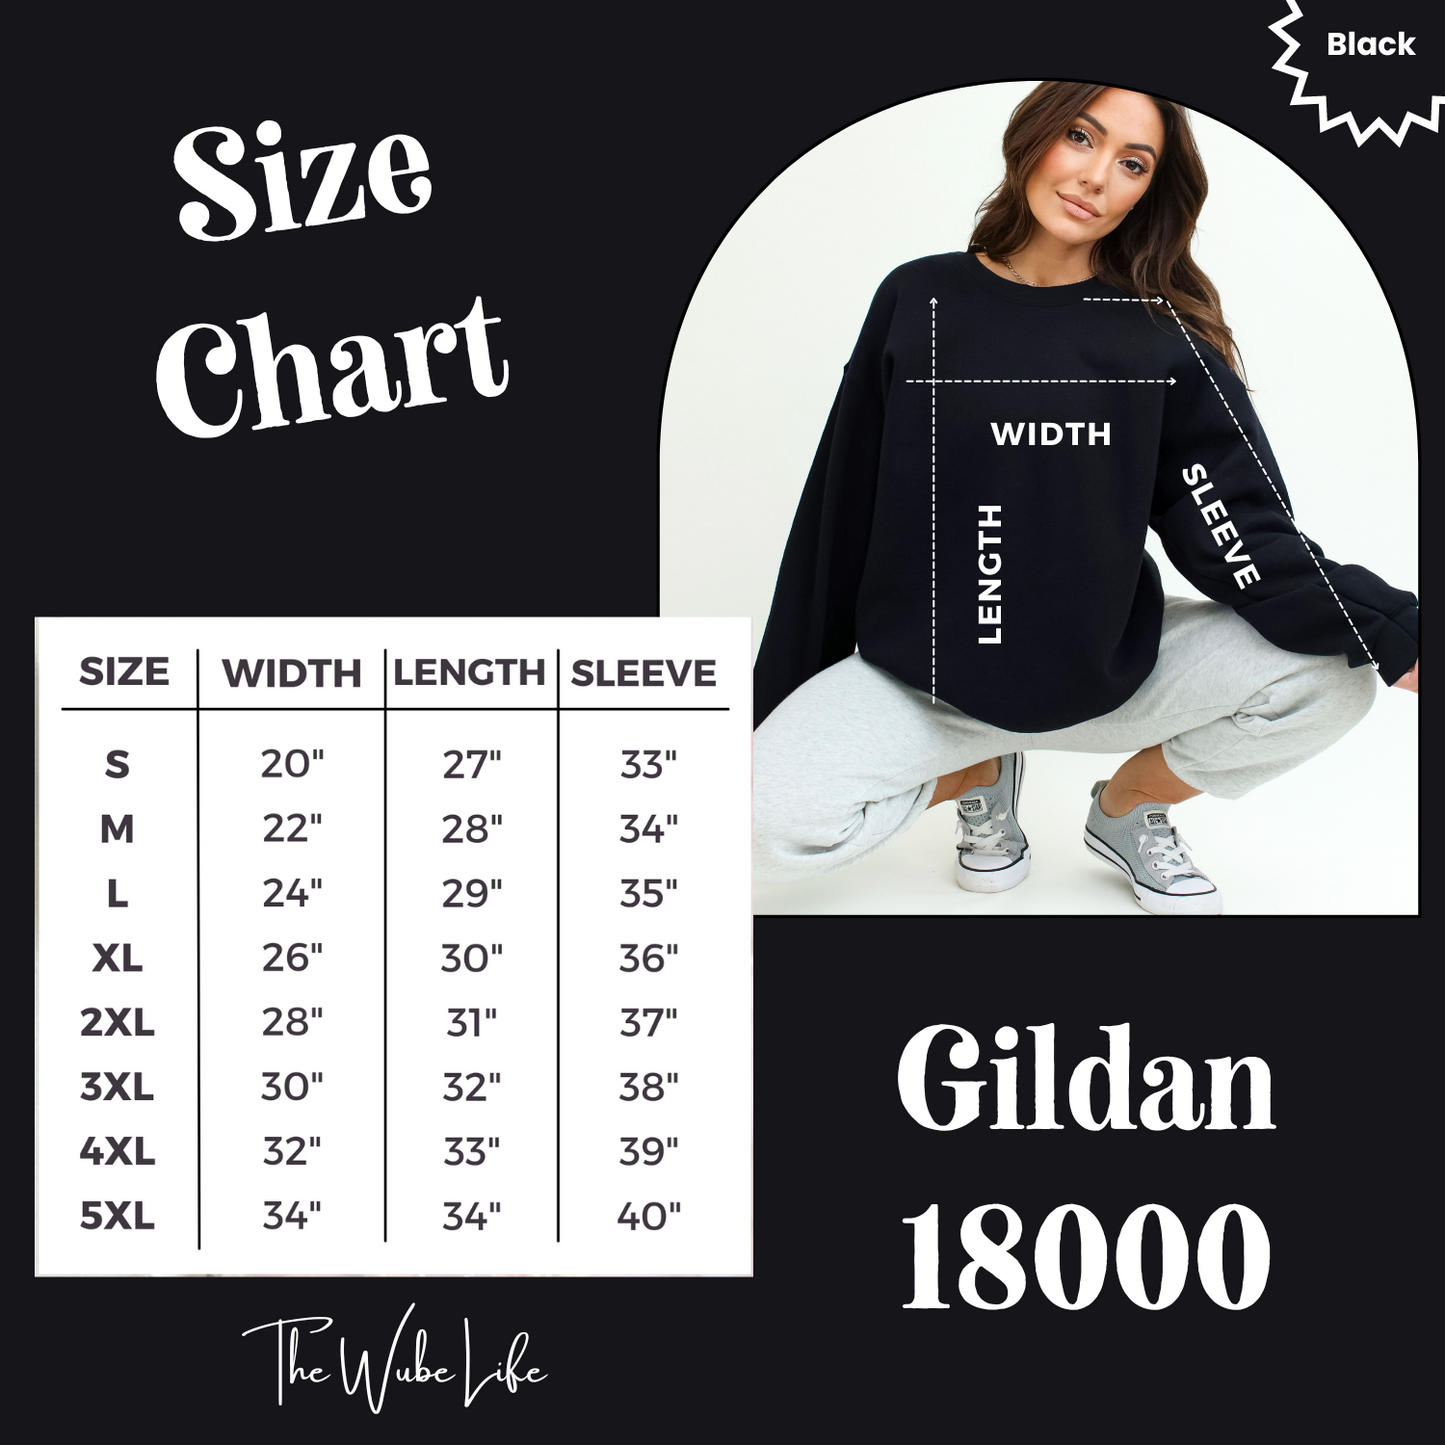 Gildan 18000 Sweatshirt size chart